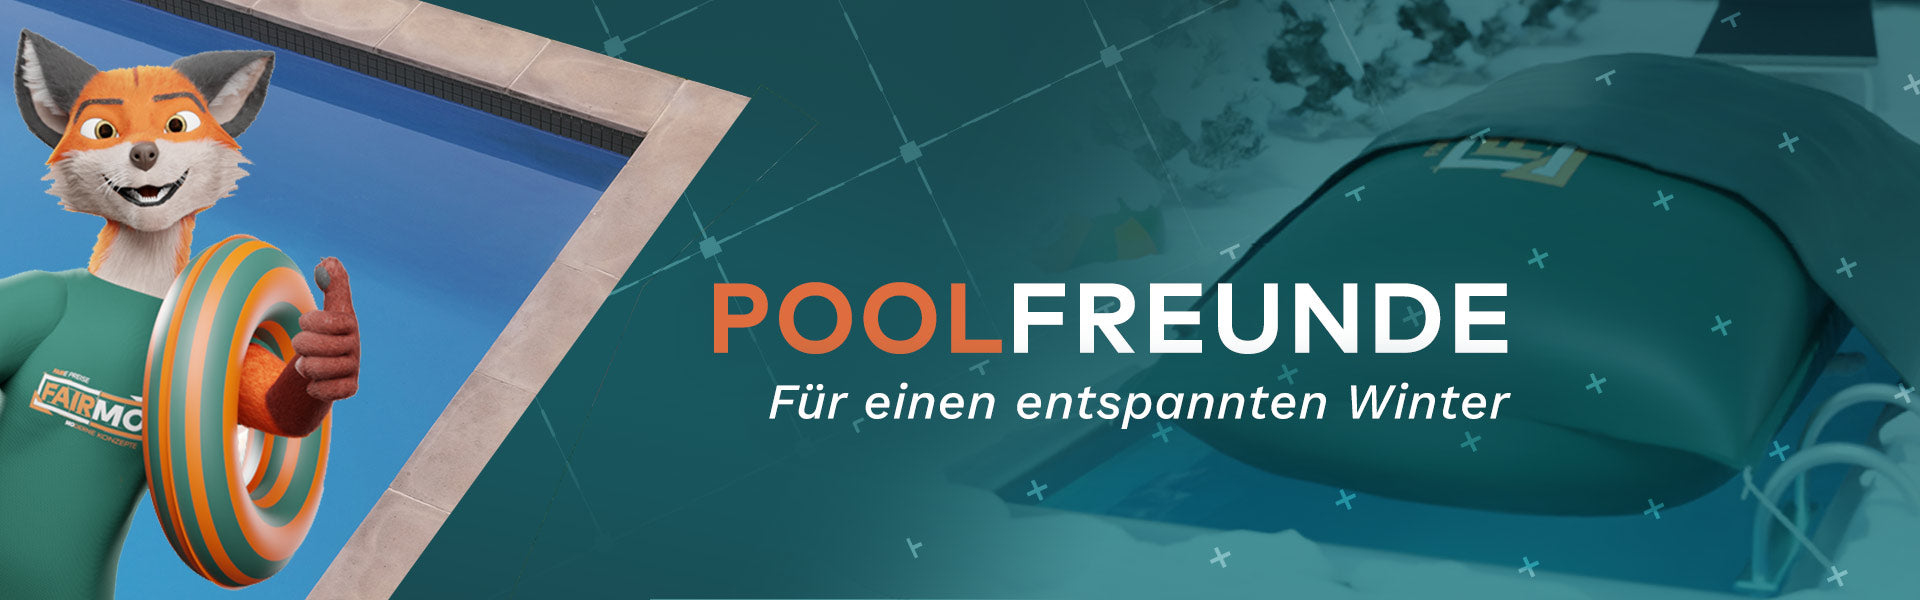 Poolfreunde